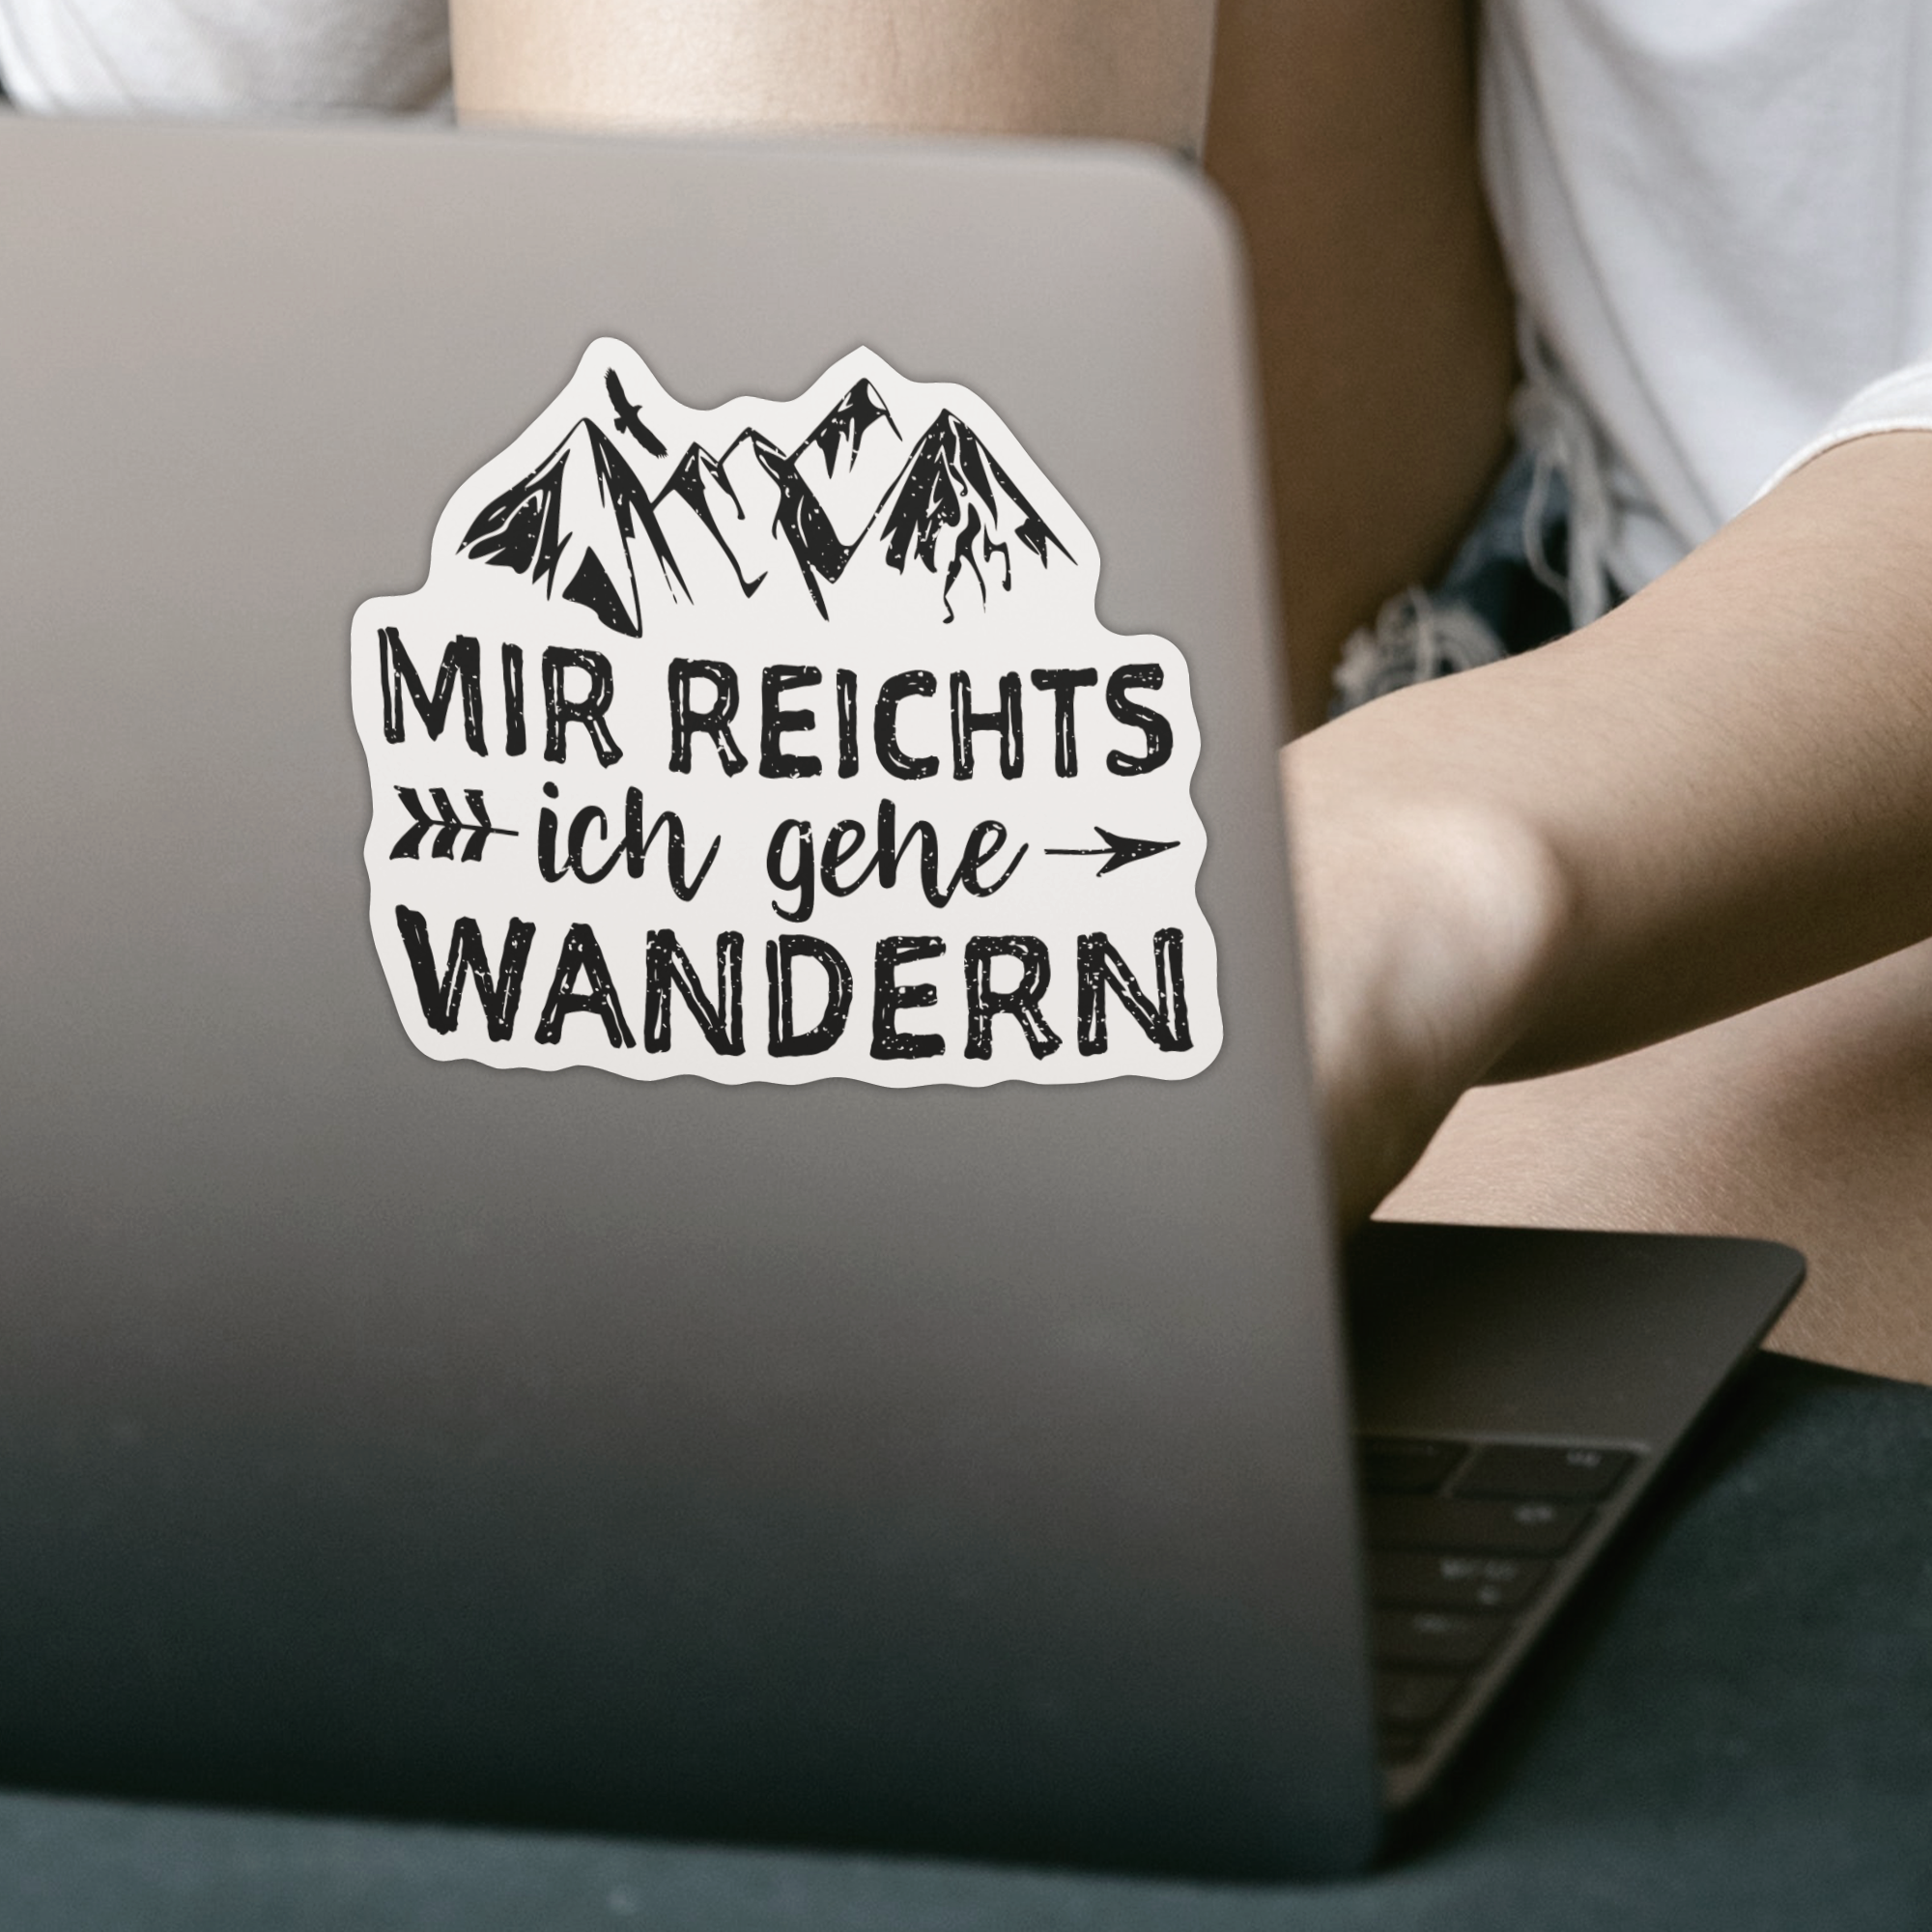 Mir Reichts Ich Gehe Wandern Sticker - DESIGNSBYJNK5.COM